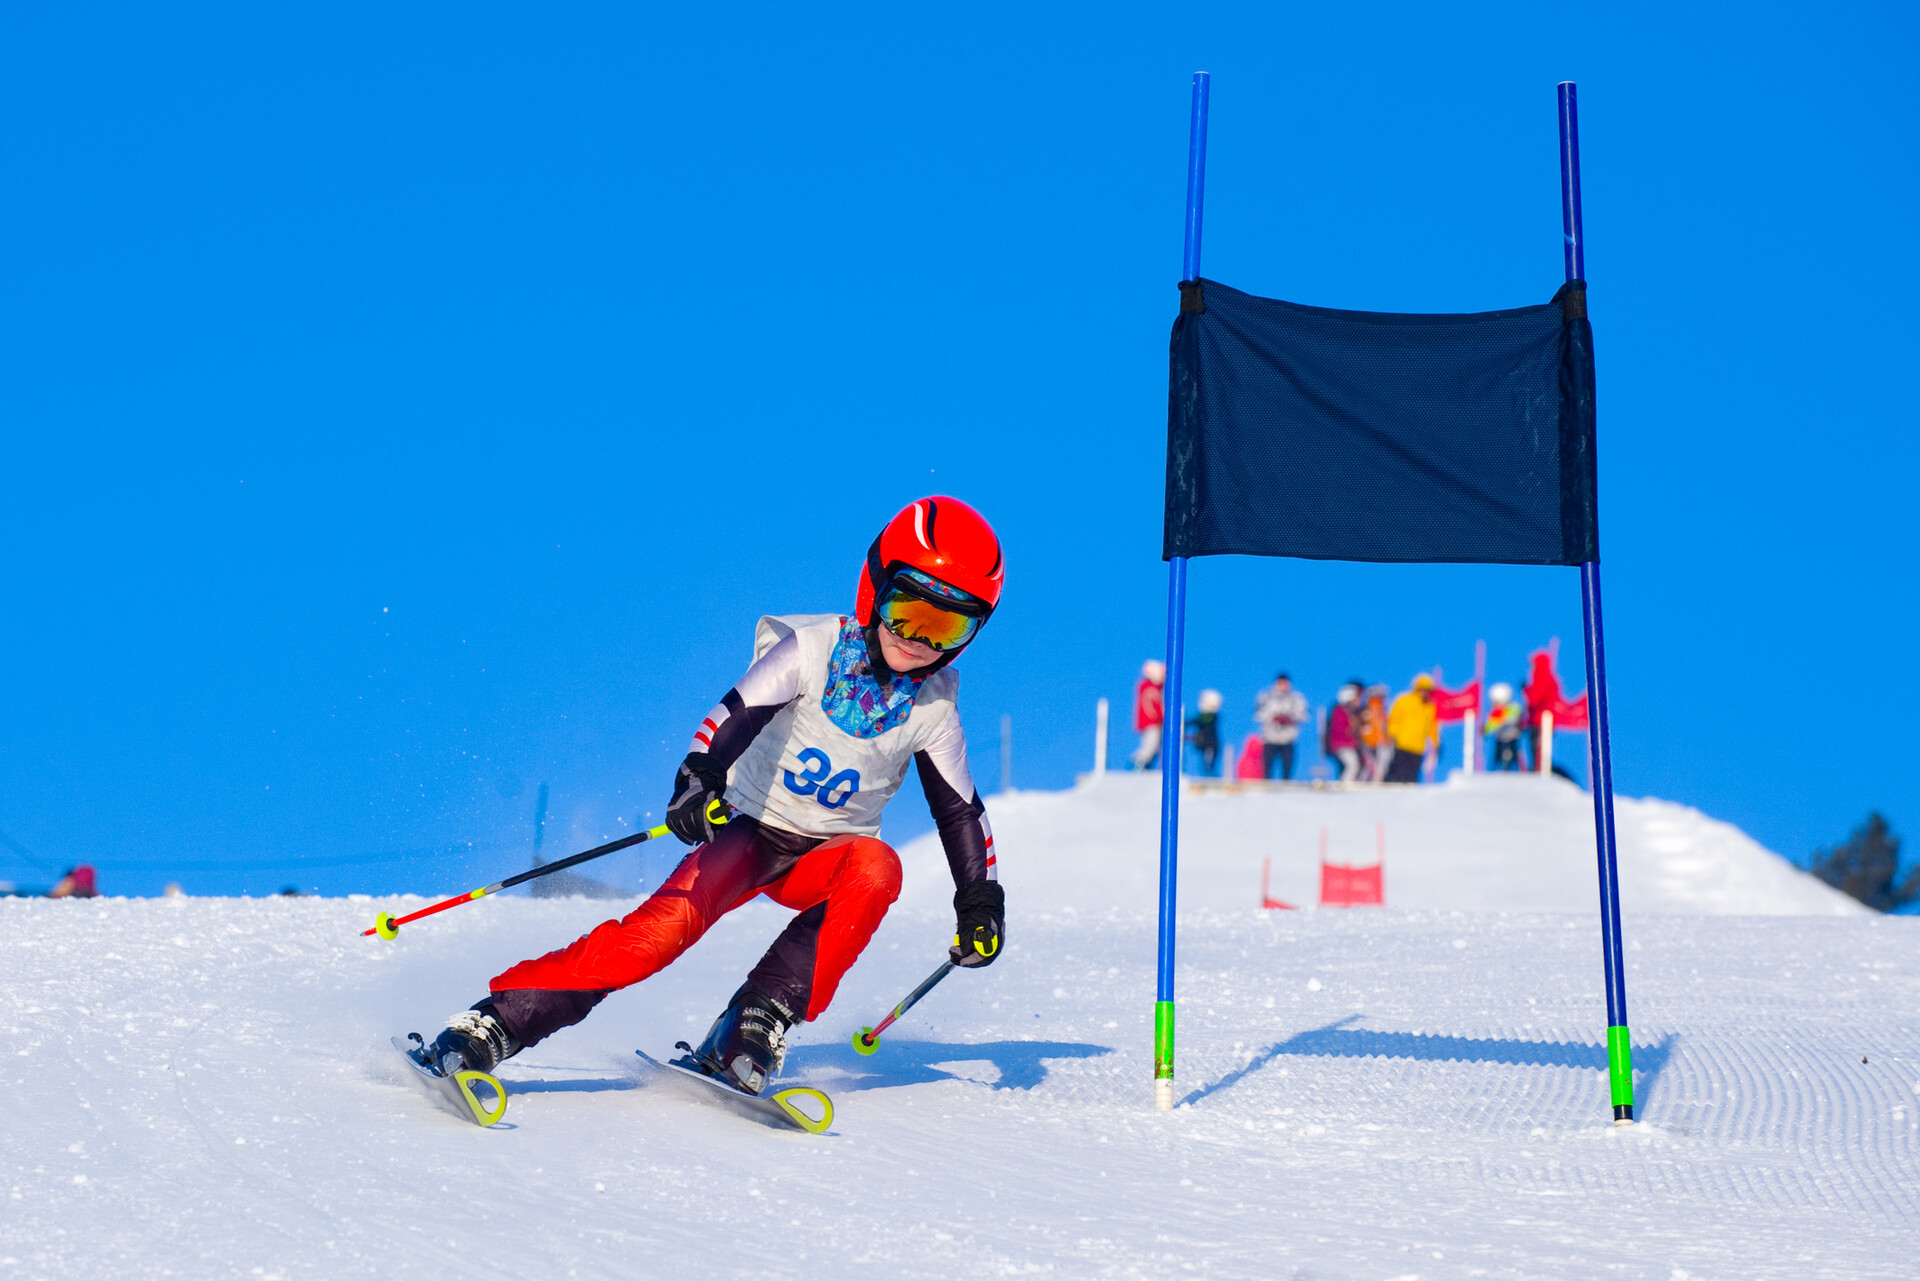 Courses de ski amateur - Participer à ces courses de ski est